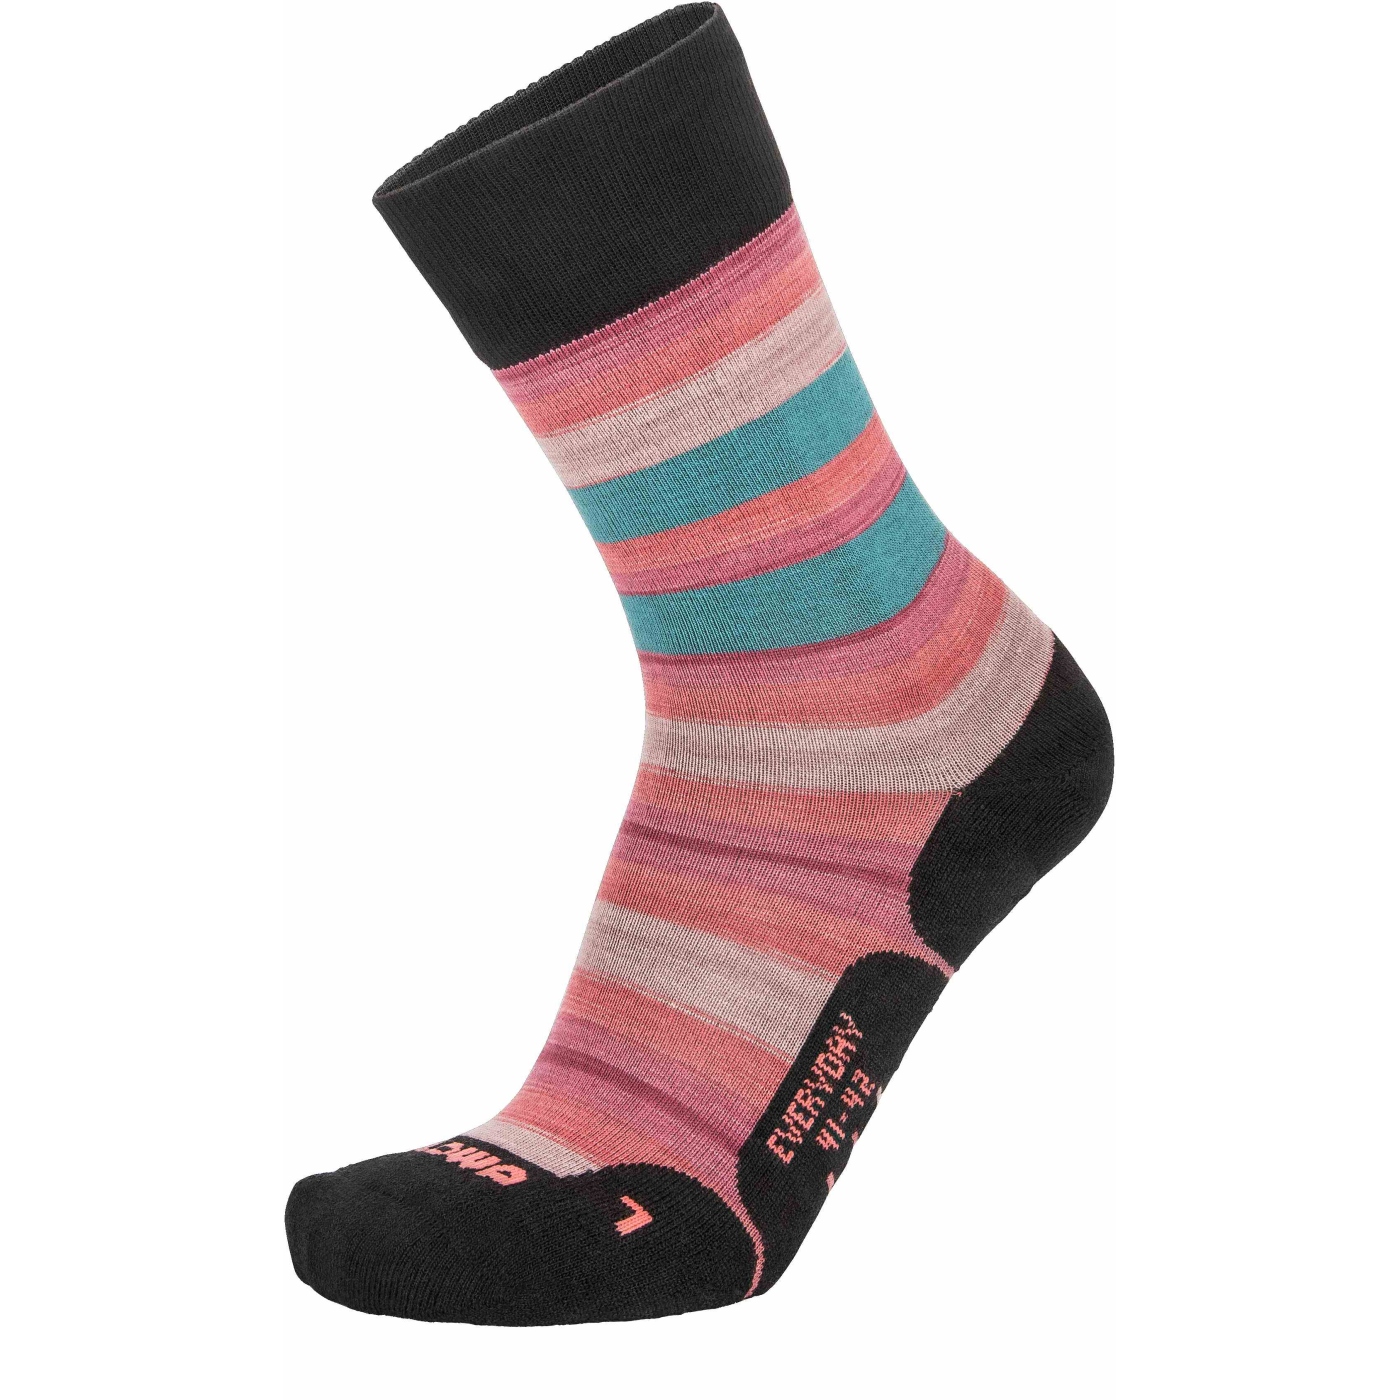 Produktbild von LOWA Everyday Socken - rosa/tuerkis gestreift